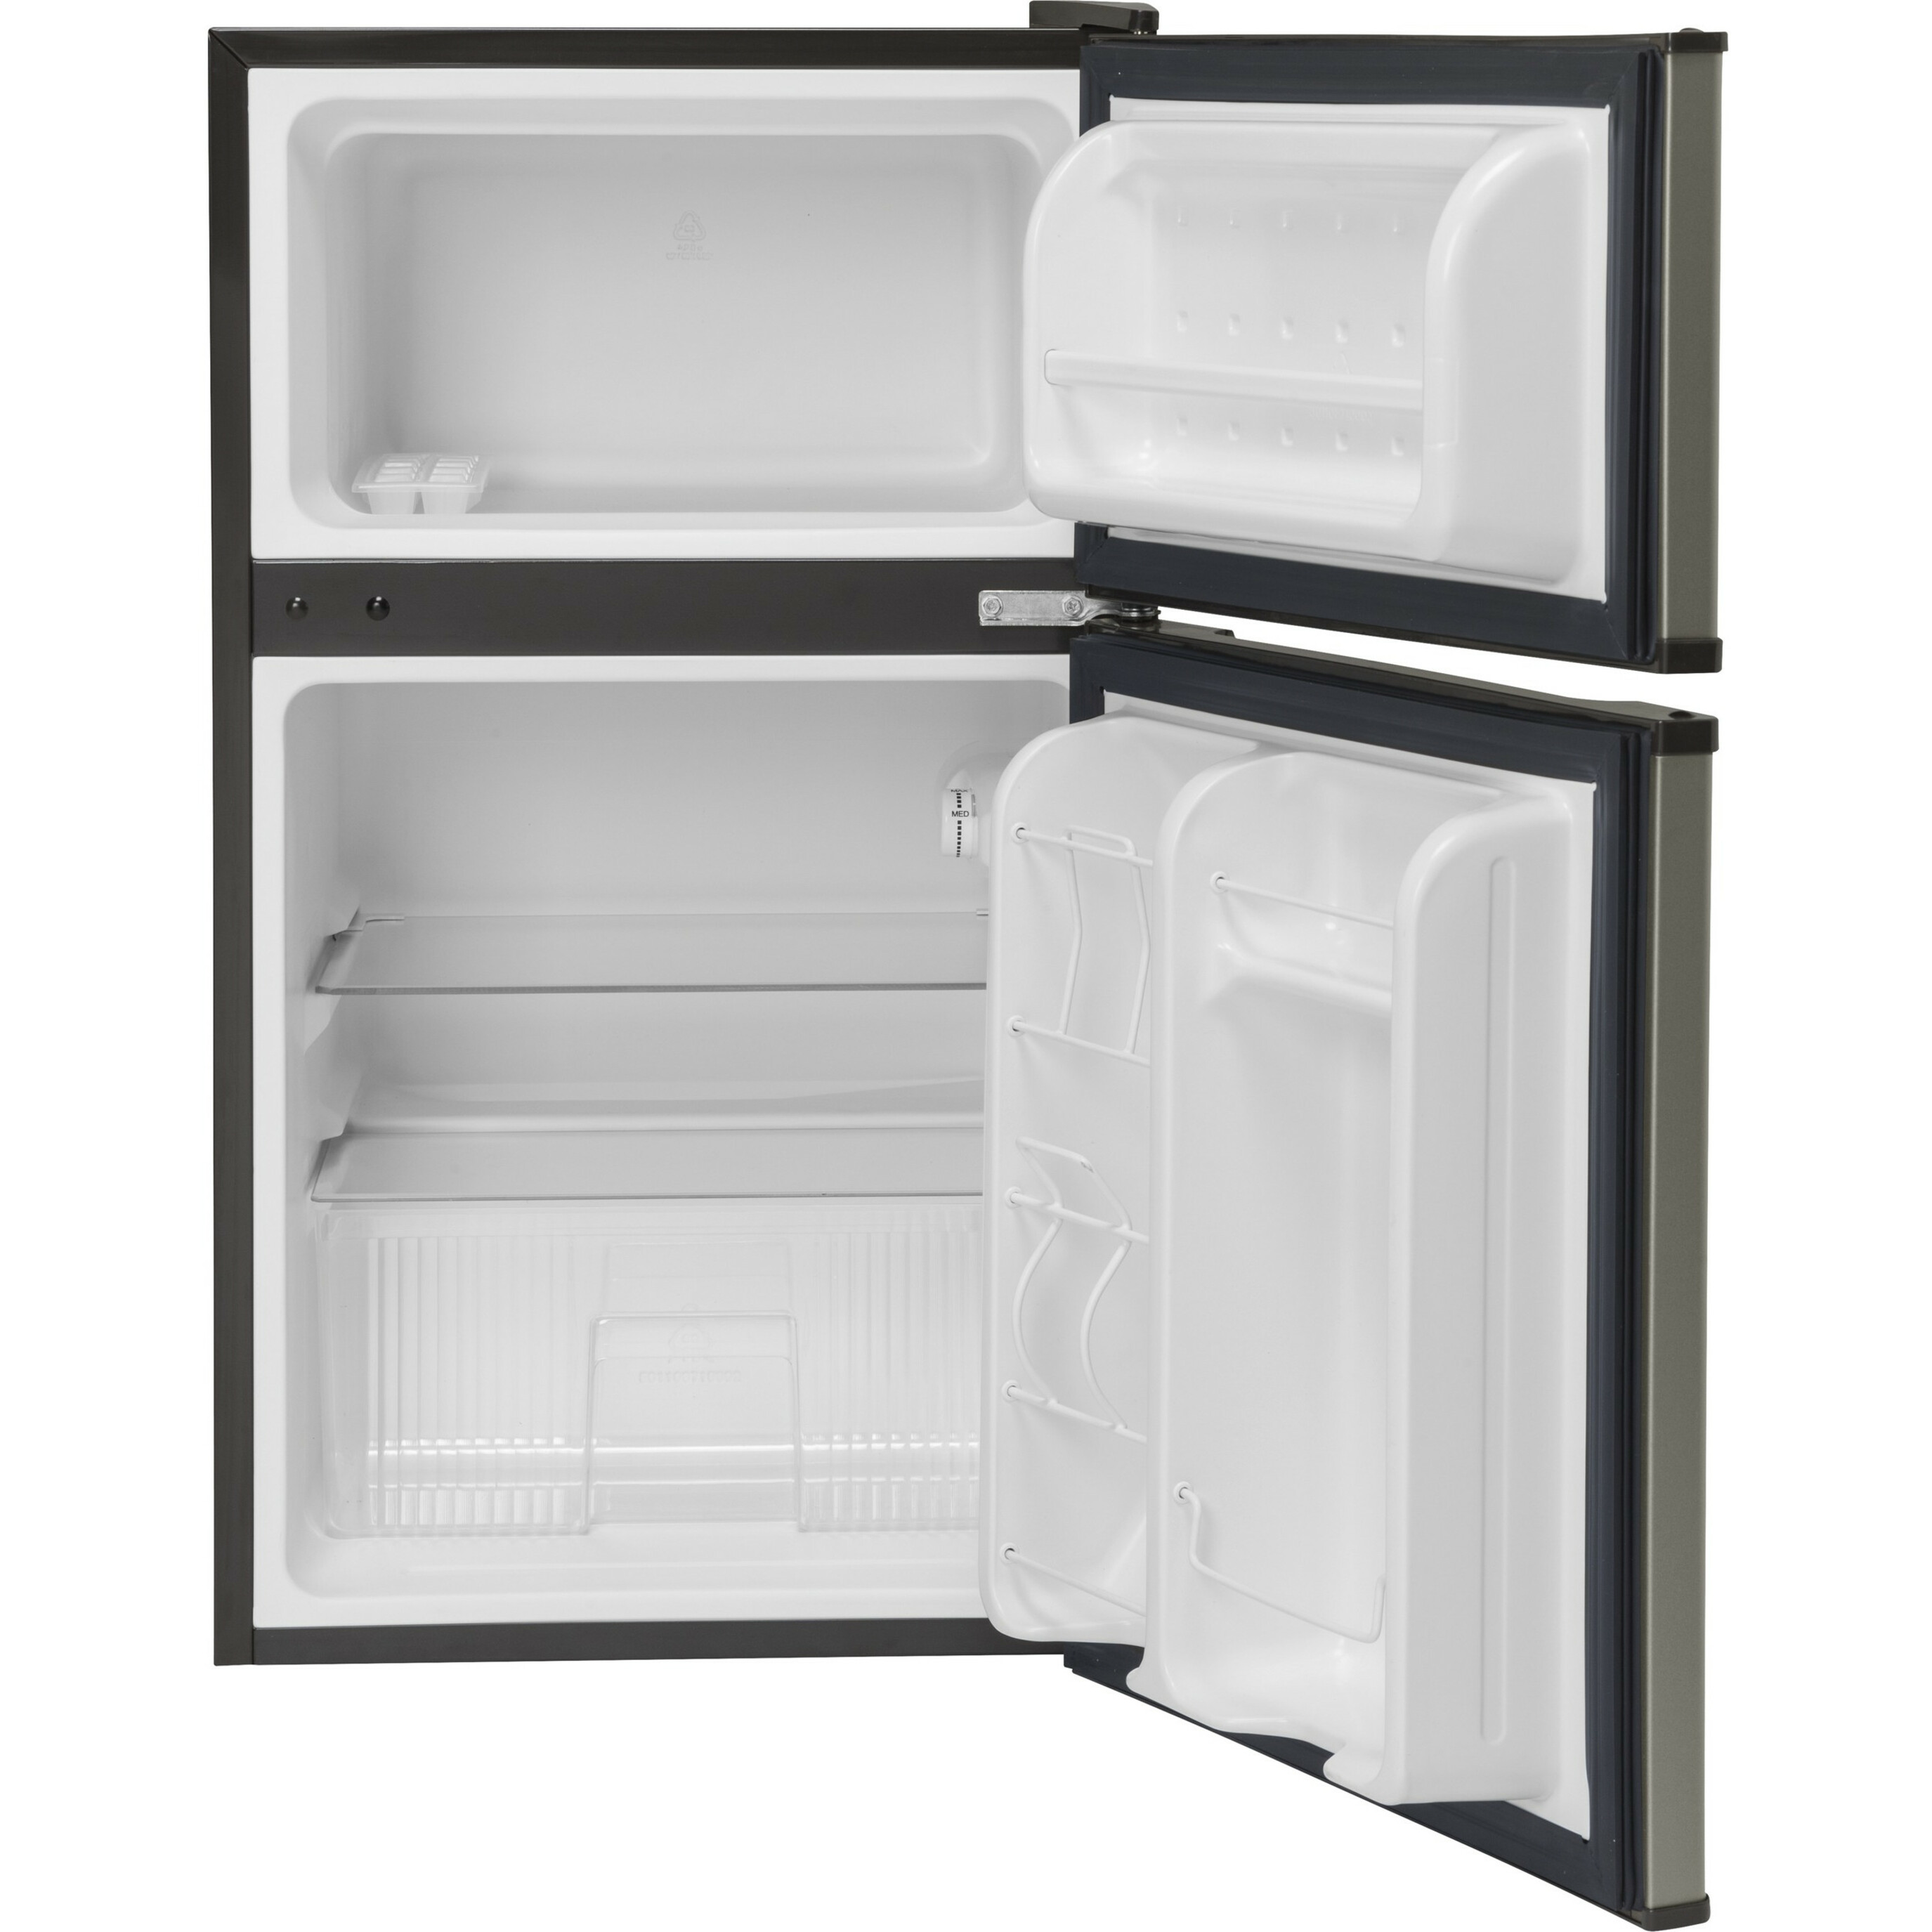 GE Appliances Double-Door Compact Refrigerator - image 2 of 3